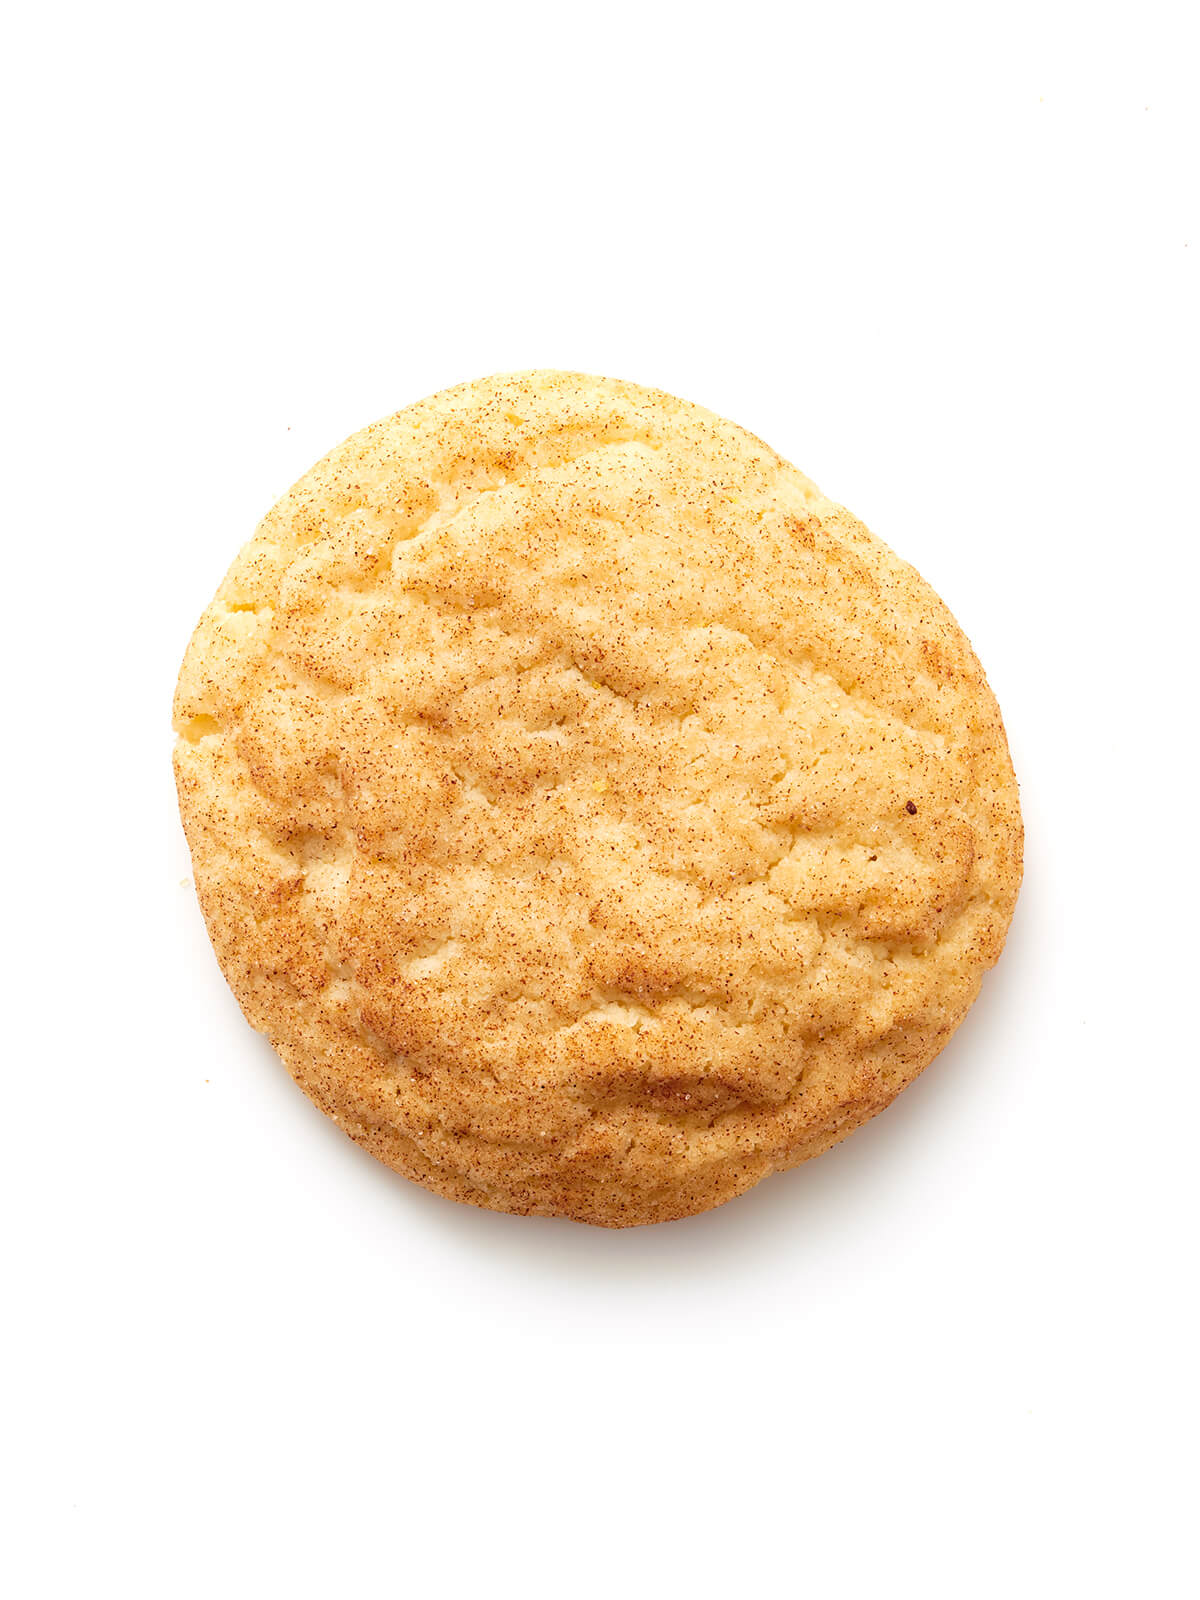 snicker doodle cookie